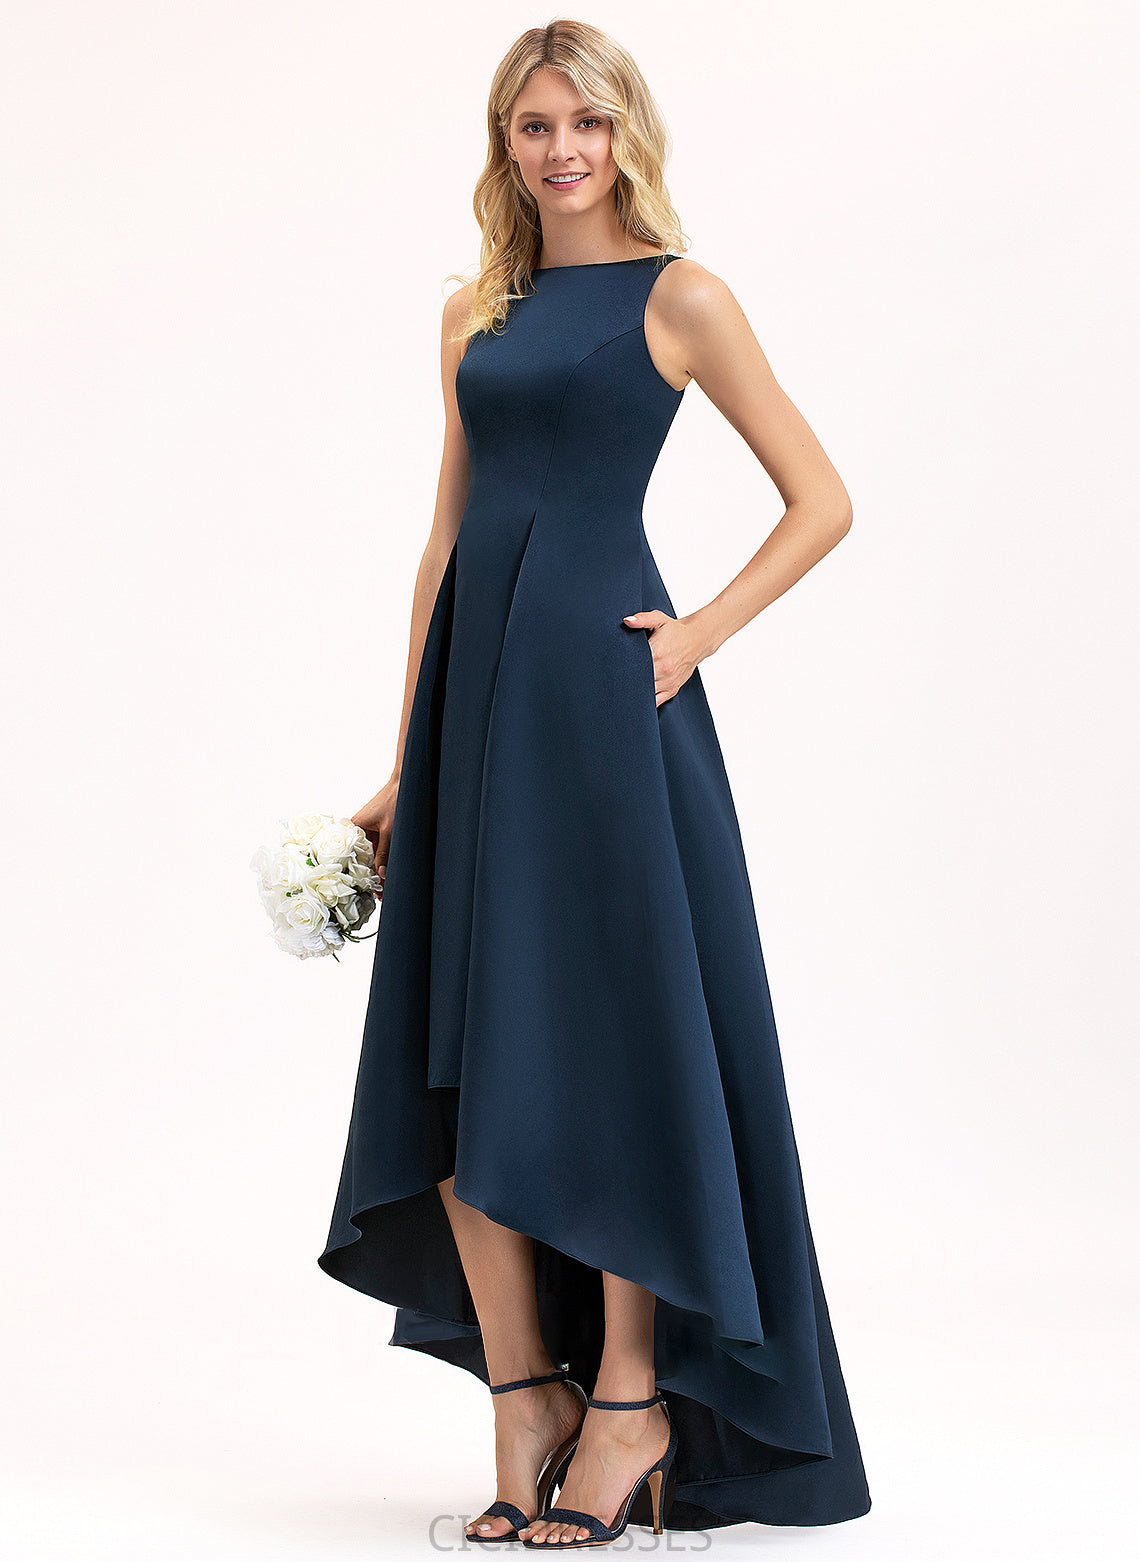 Silhouette A-Line Neckline Pockets ScoopNeck Length Fabric Embellishment Asymmetrical Justine A-Line/Princess Natural Waist Bridesmaid Dresses